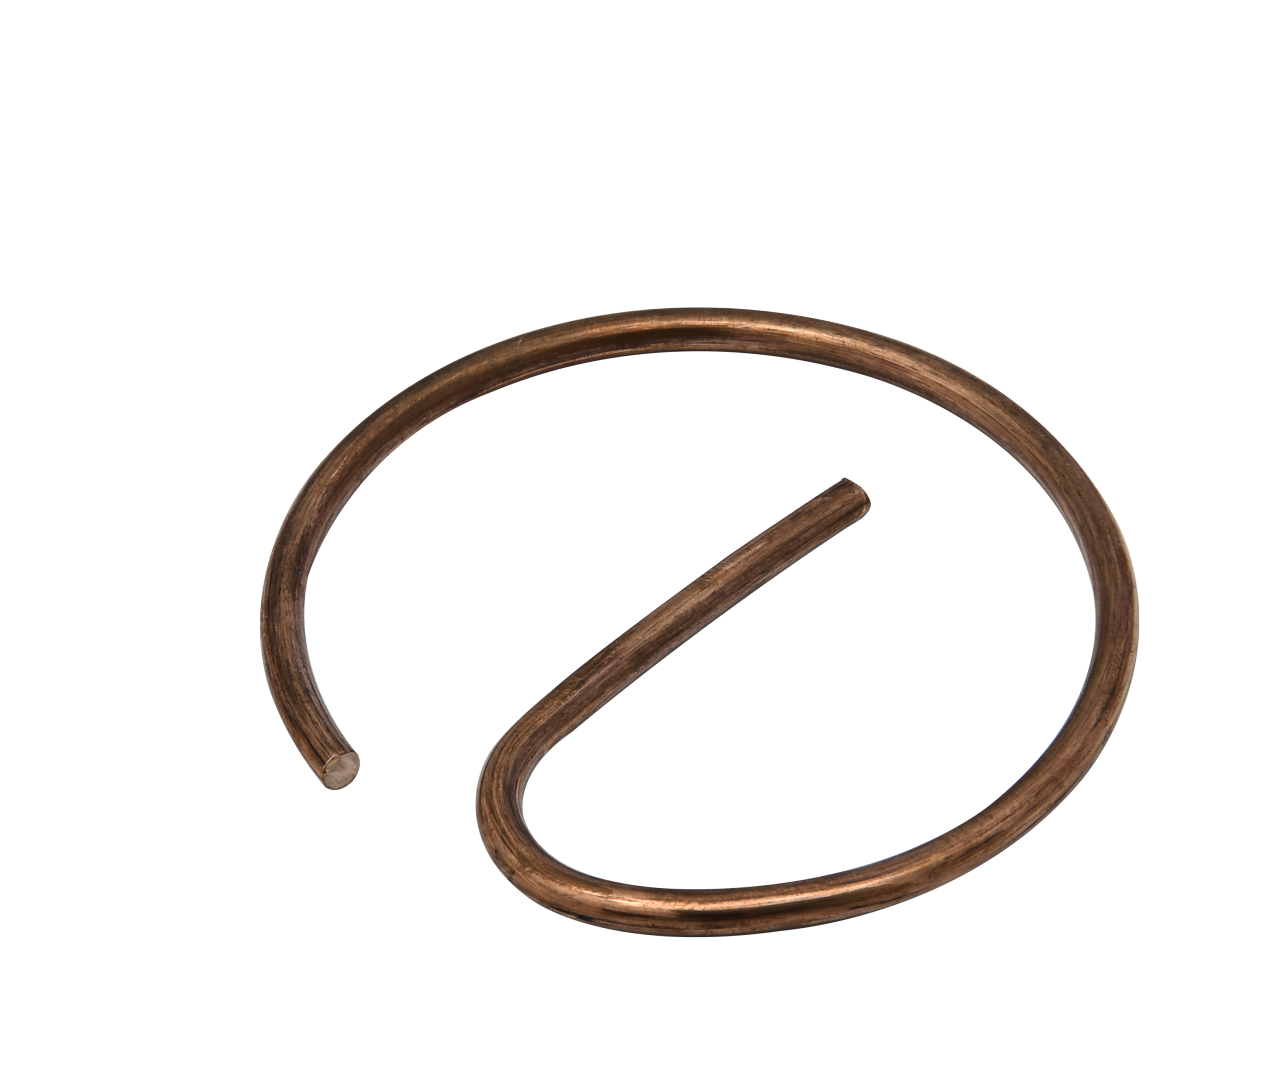 3.0 copper wire form